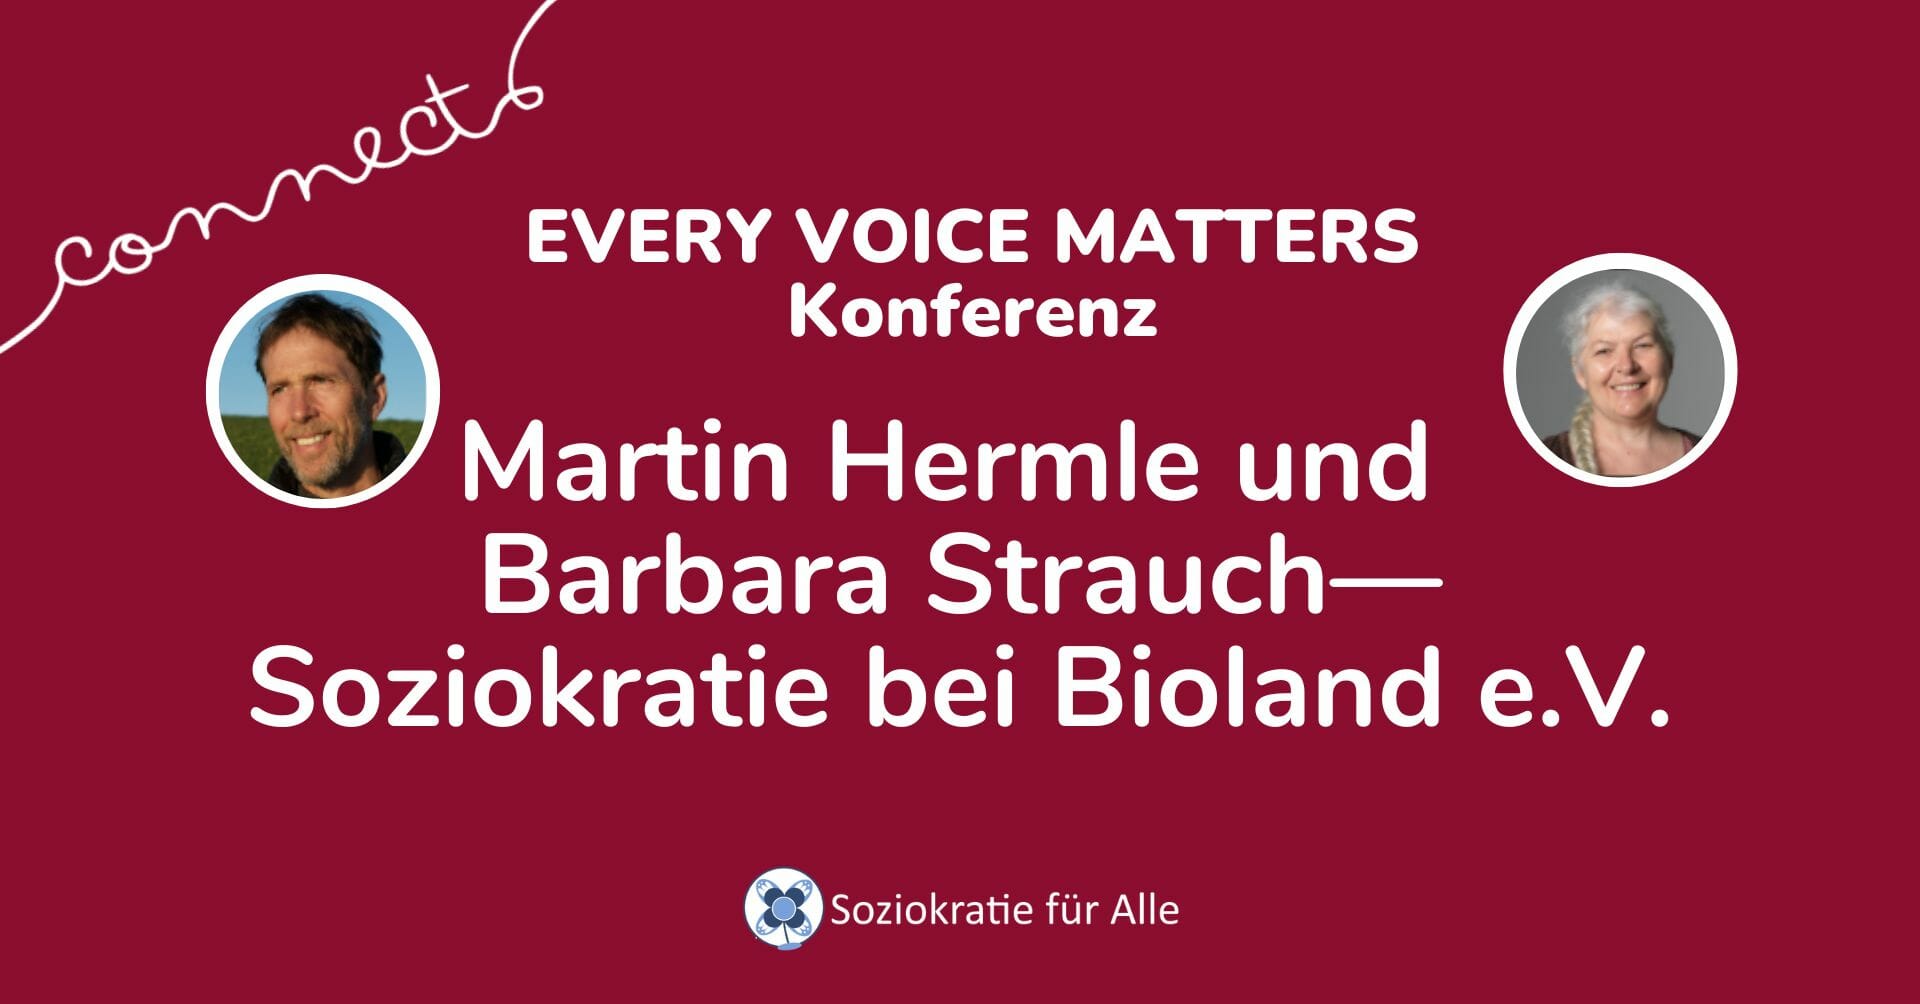 Martin Hermle und Barbara Strauch— Soziokratie bei Bioland e.V.